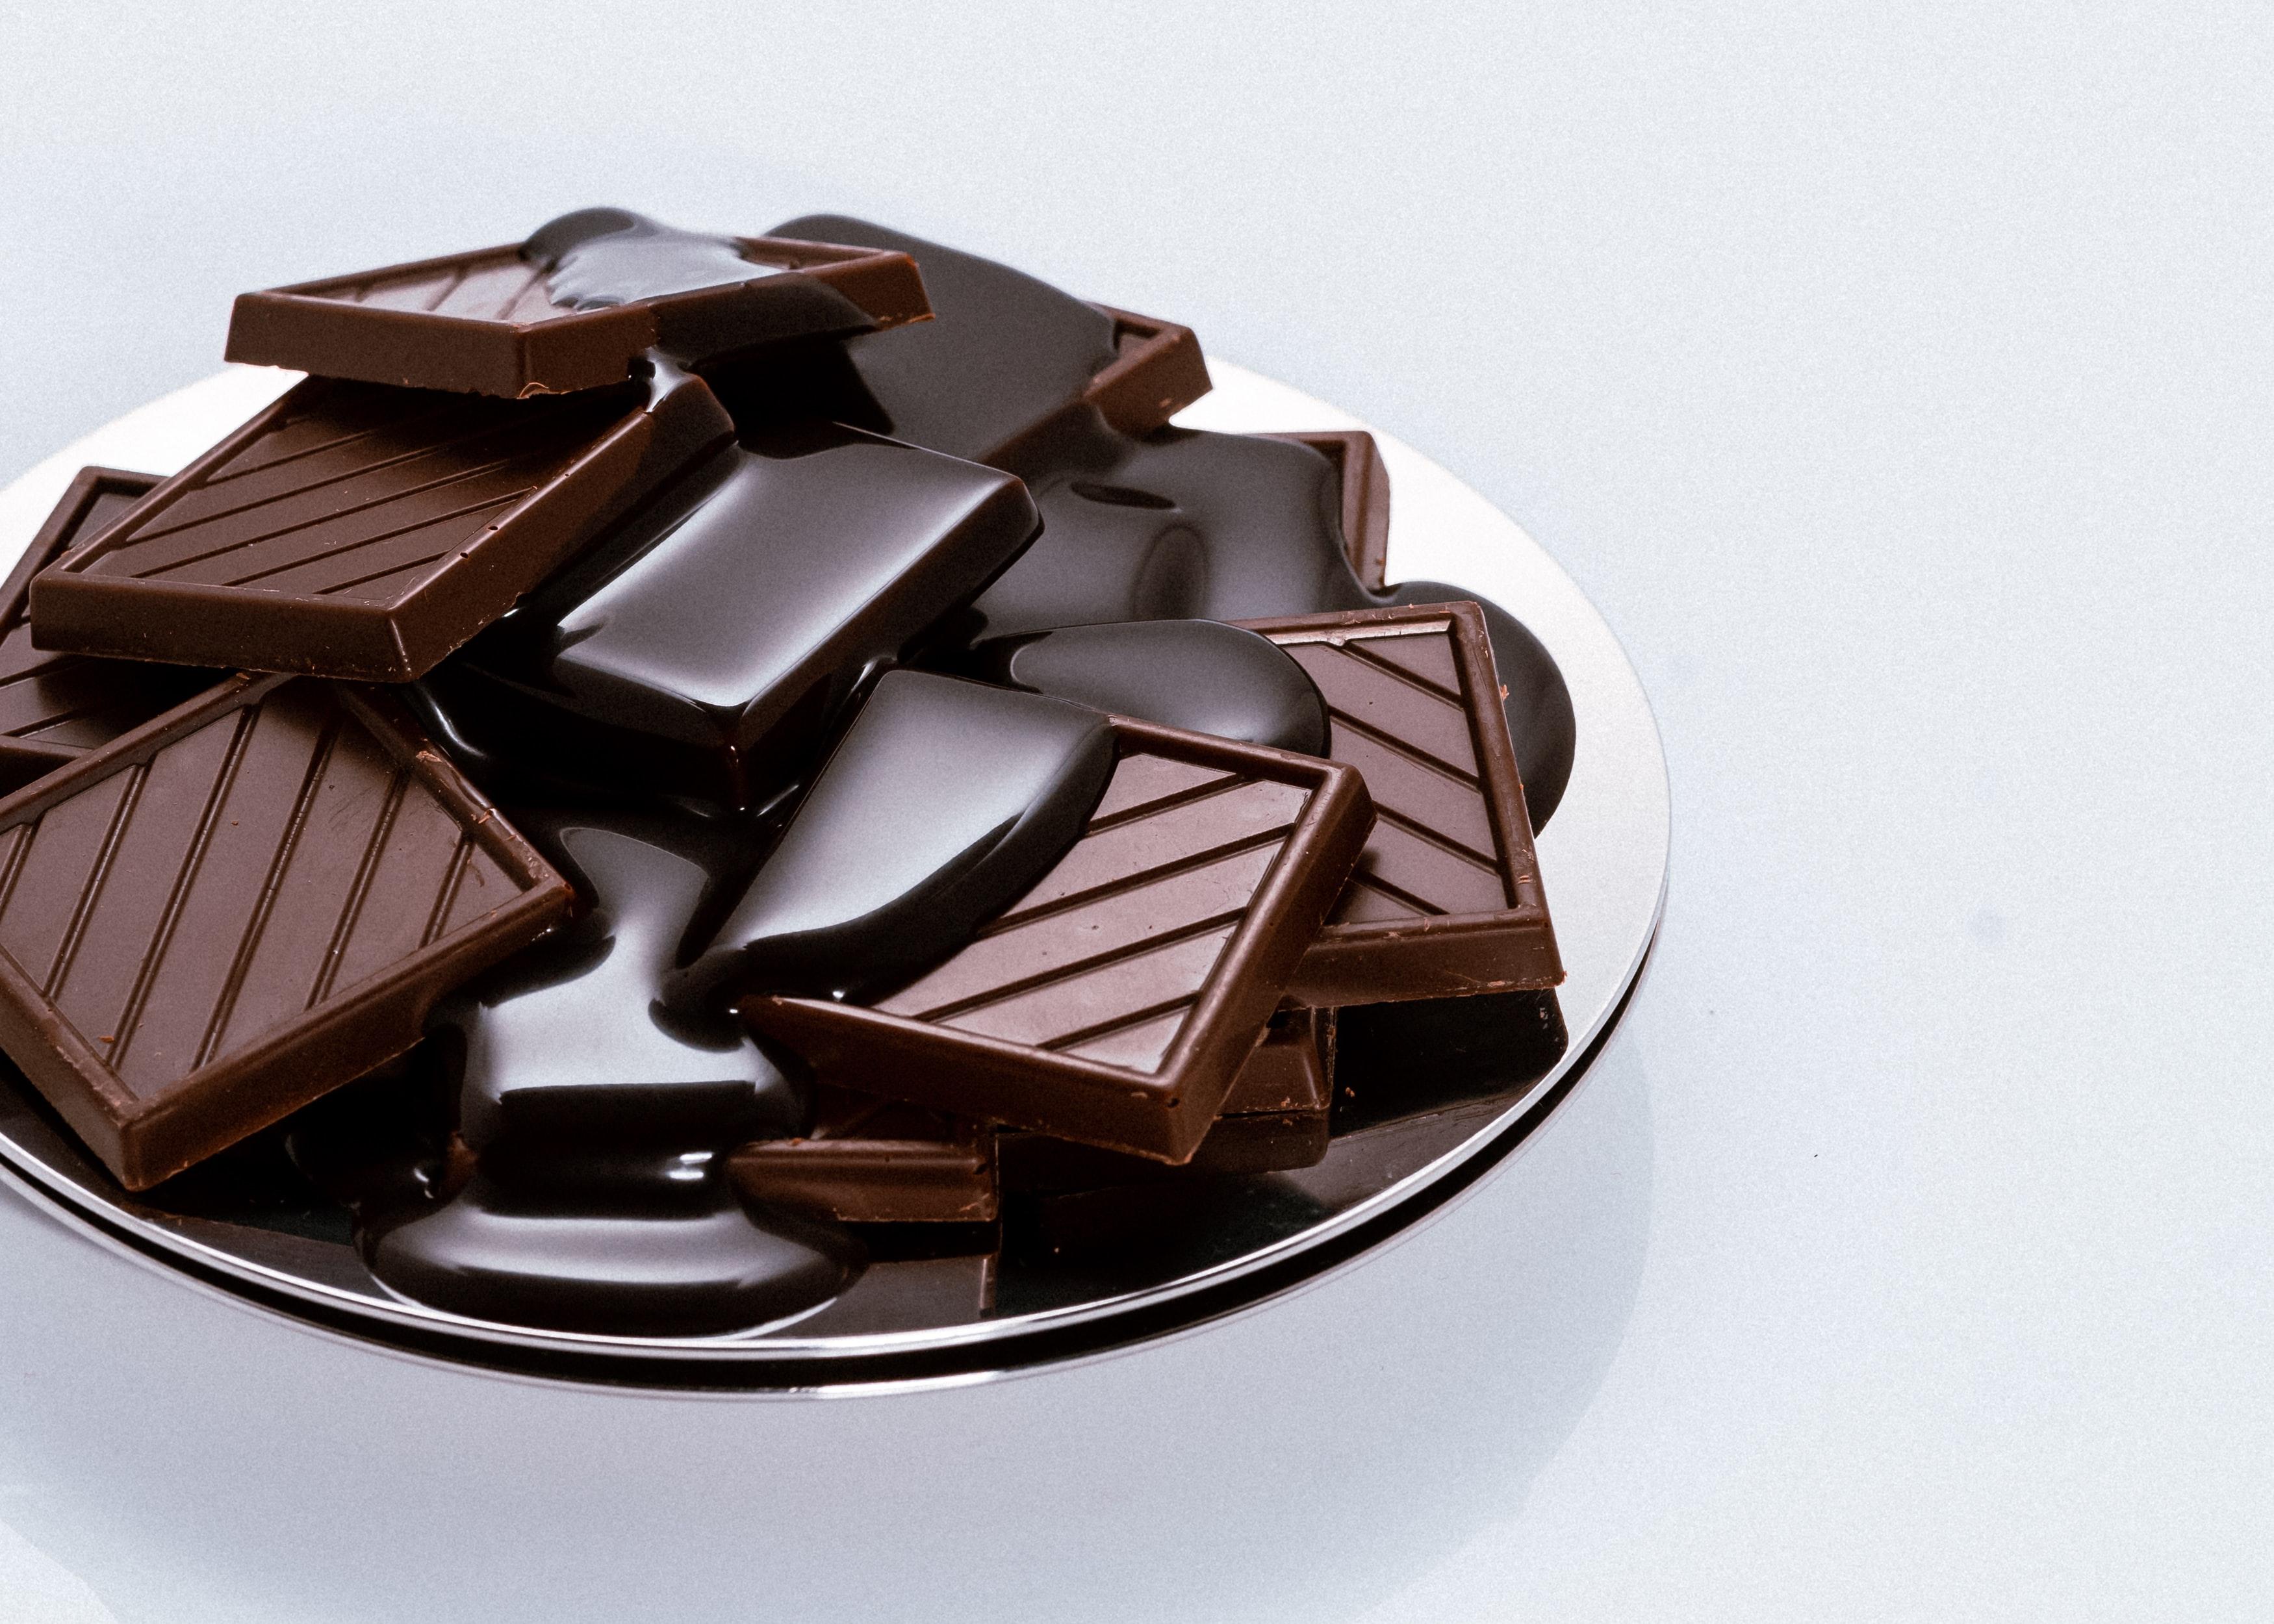 原来吃巧克力有这么多好处?又给吃货找了个好理由! 